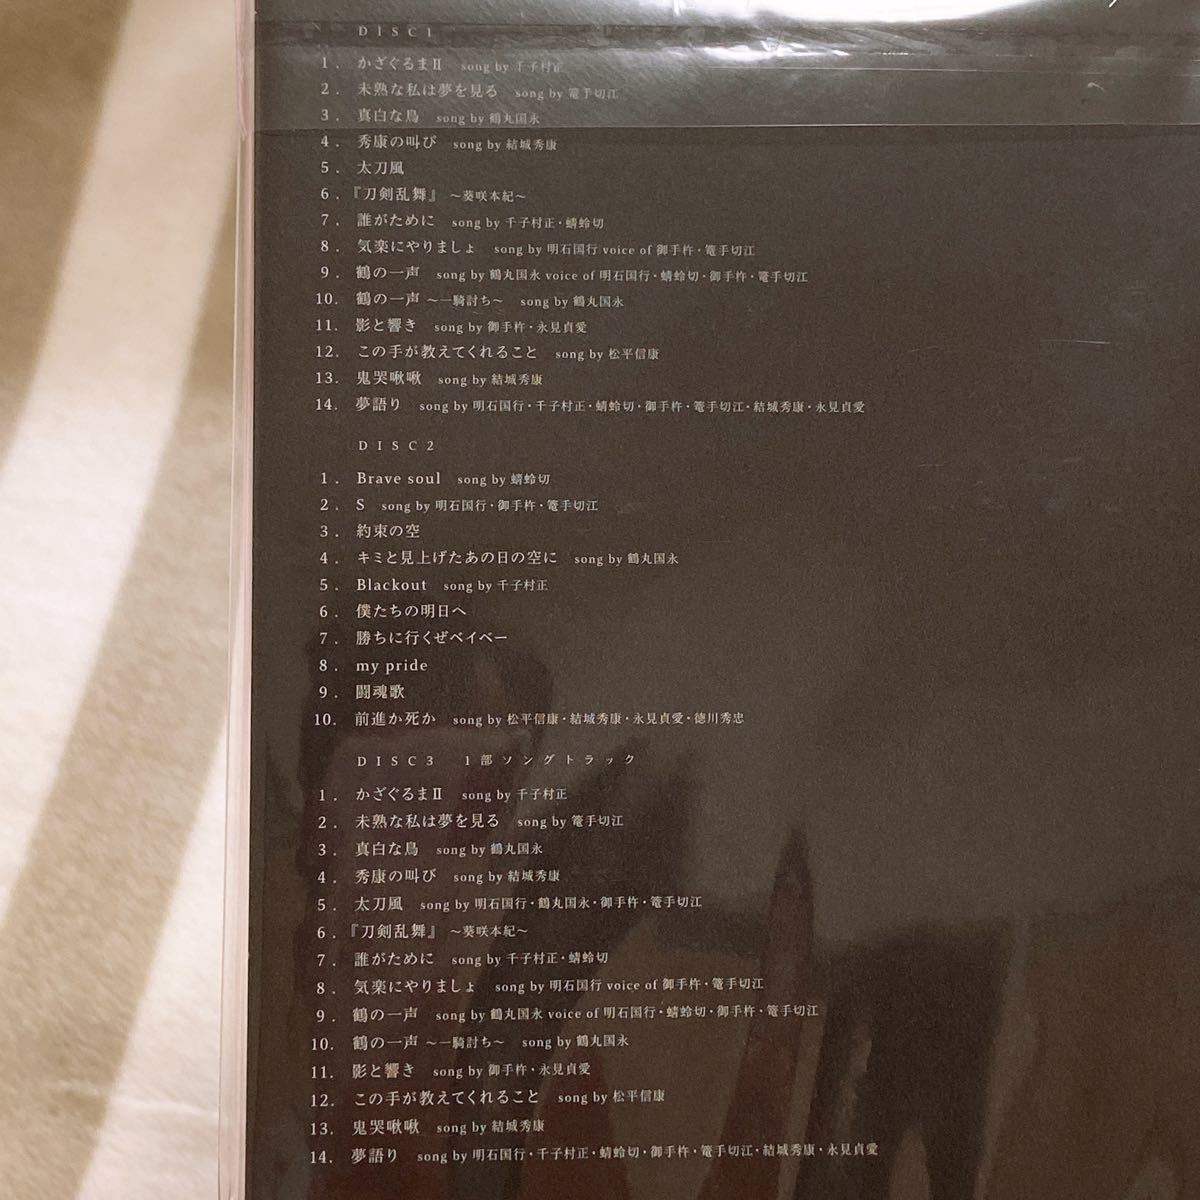 ミュージカル 『刀剣乱舞』 葵咲本紀 (初回限定盤A) CD 刀剣男士 formation of 葵咲